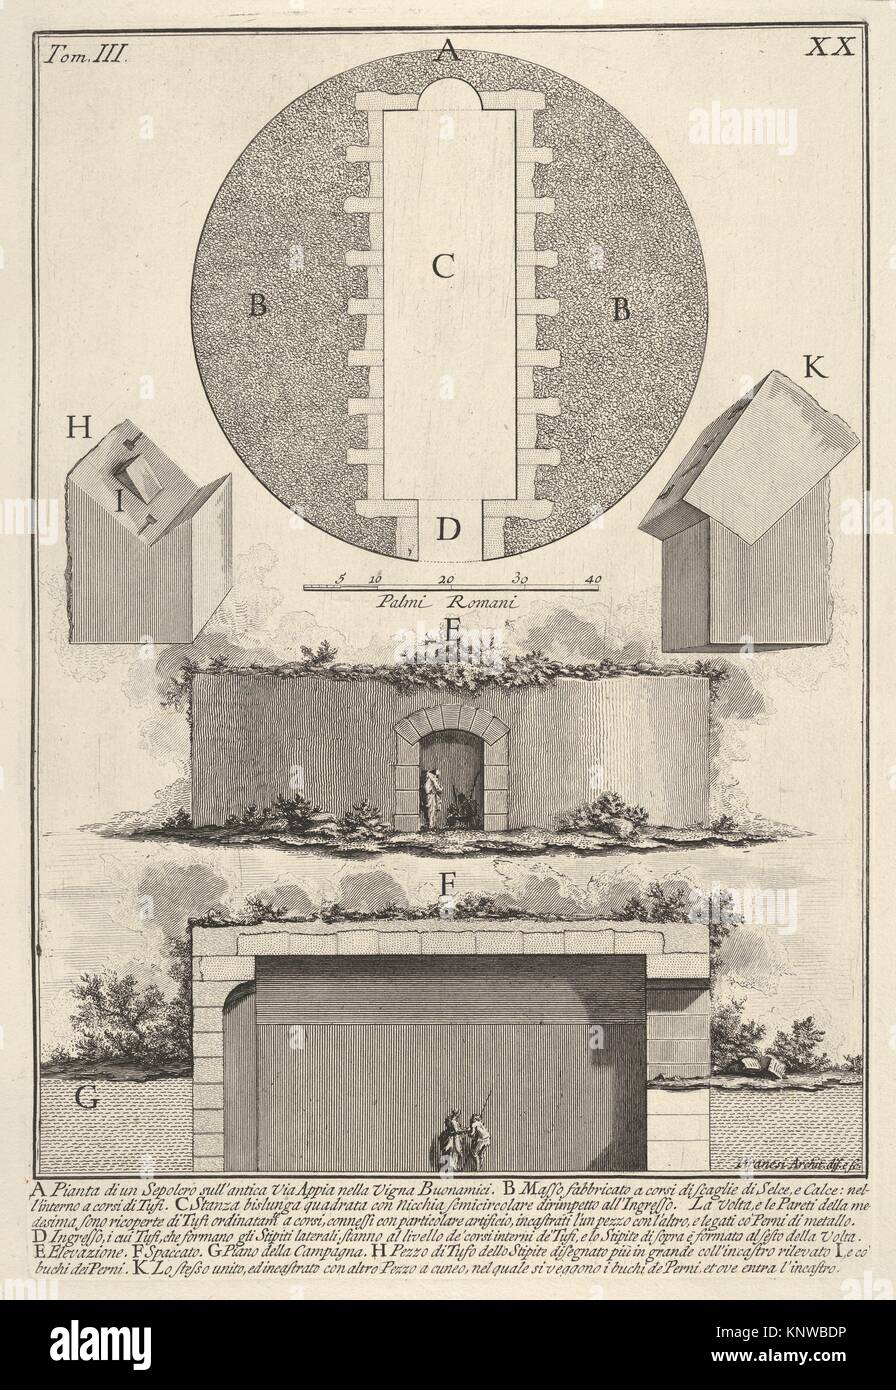 Plan de una tumba en la Vía Appia en Vigna Buonamici (Pianta di onu sepolcro sull'Antica Via Appia nella Vigna Buonamici), de la serie "Le Foto de stock